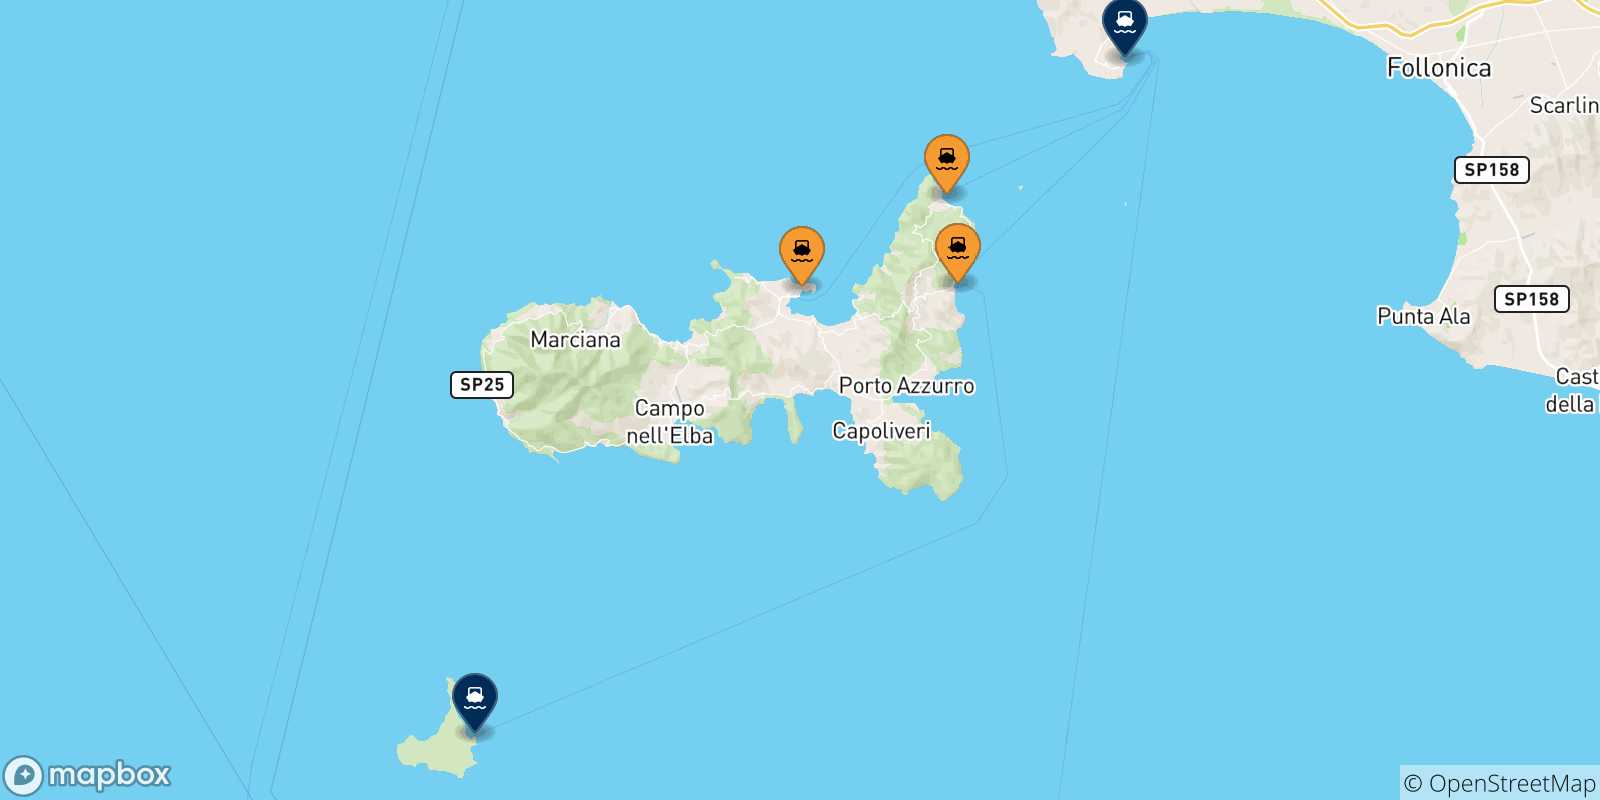 Mappa delle possibili rotte tra l'Isola D'elba e l'Italia